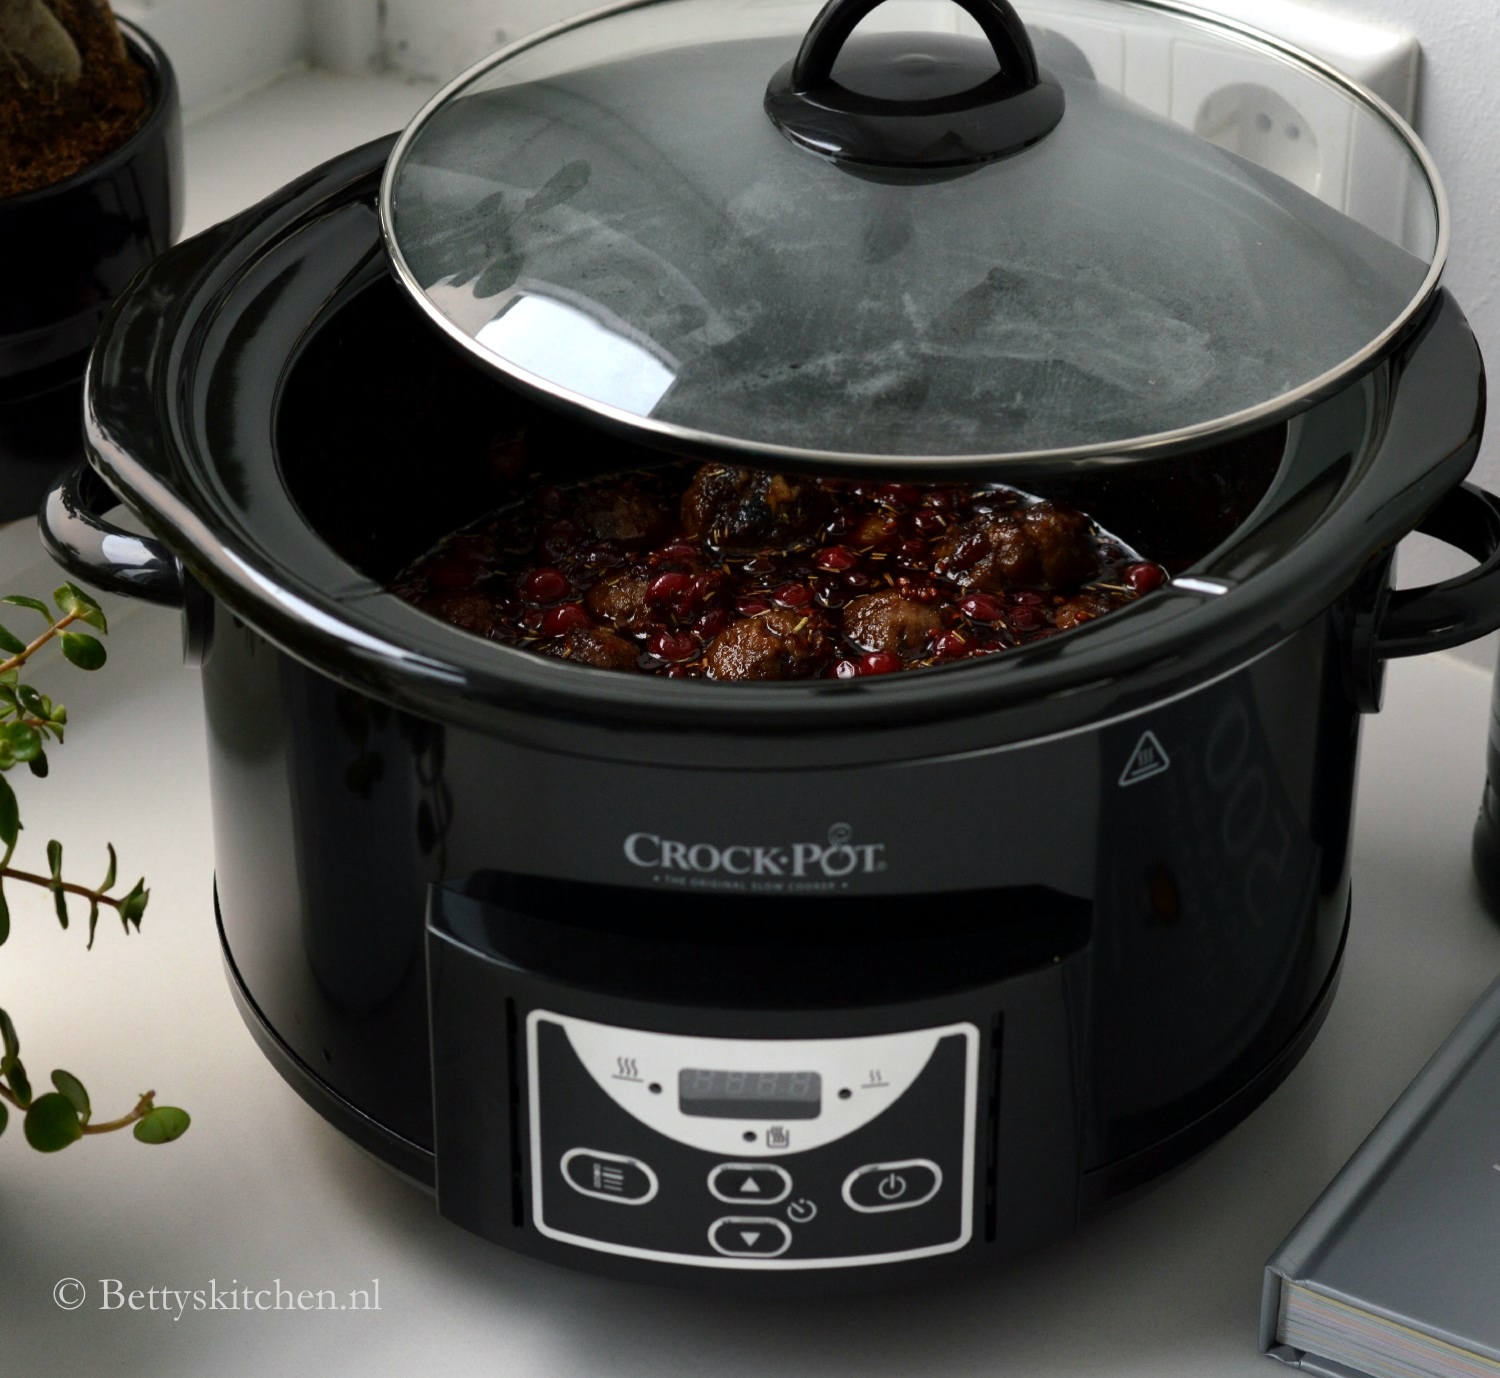 Best Buy: Crock-Pot 6-Quart WeMo Enabled Smart Slow Cooker Silver  SCCPWM600-V1